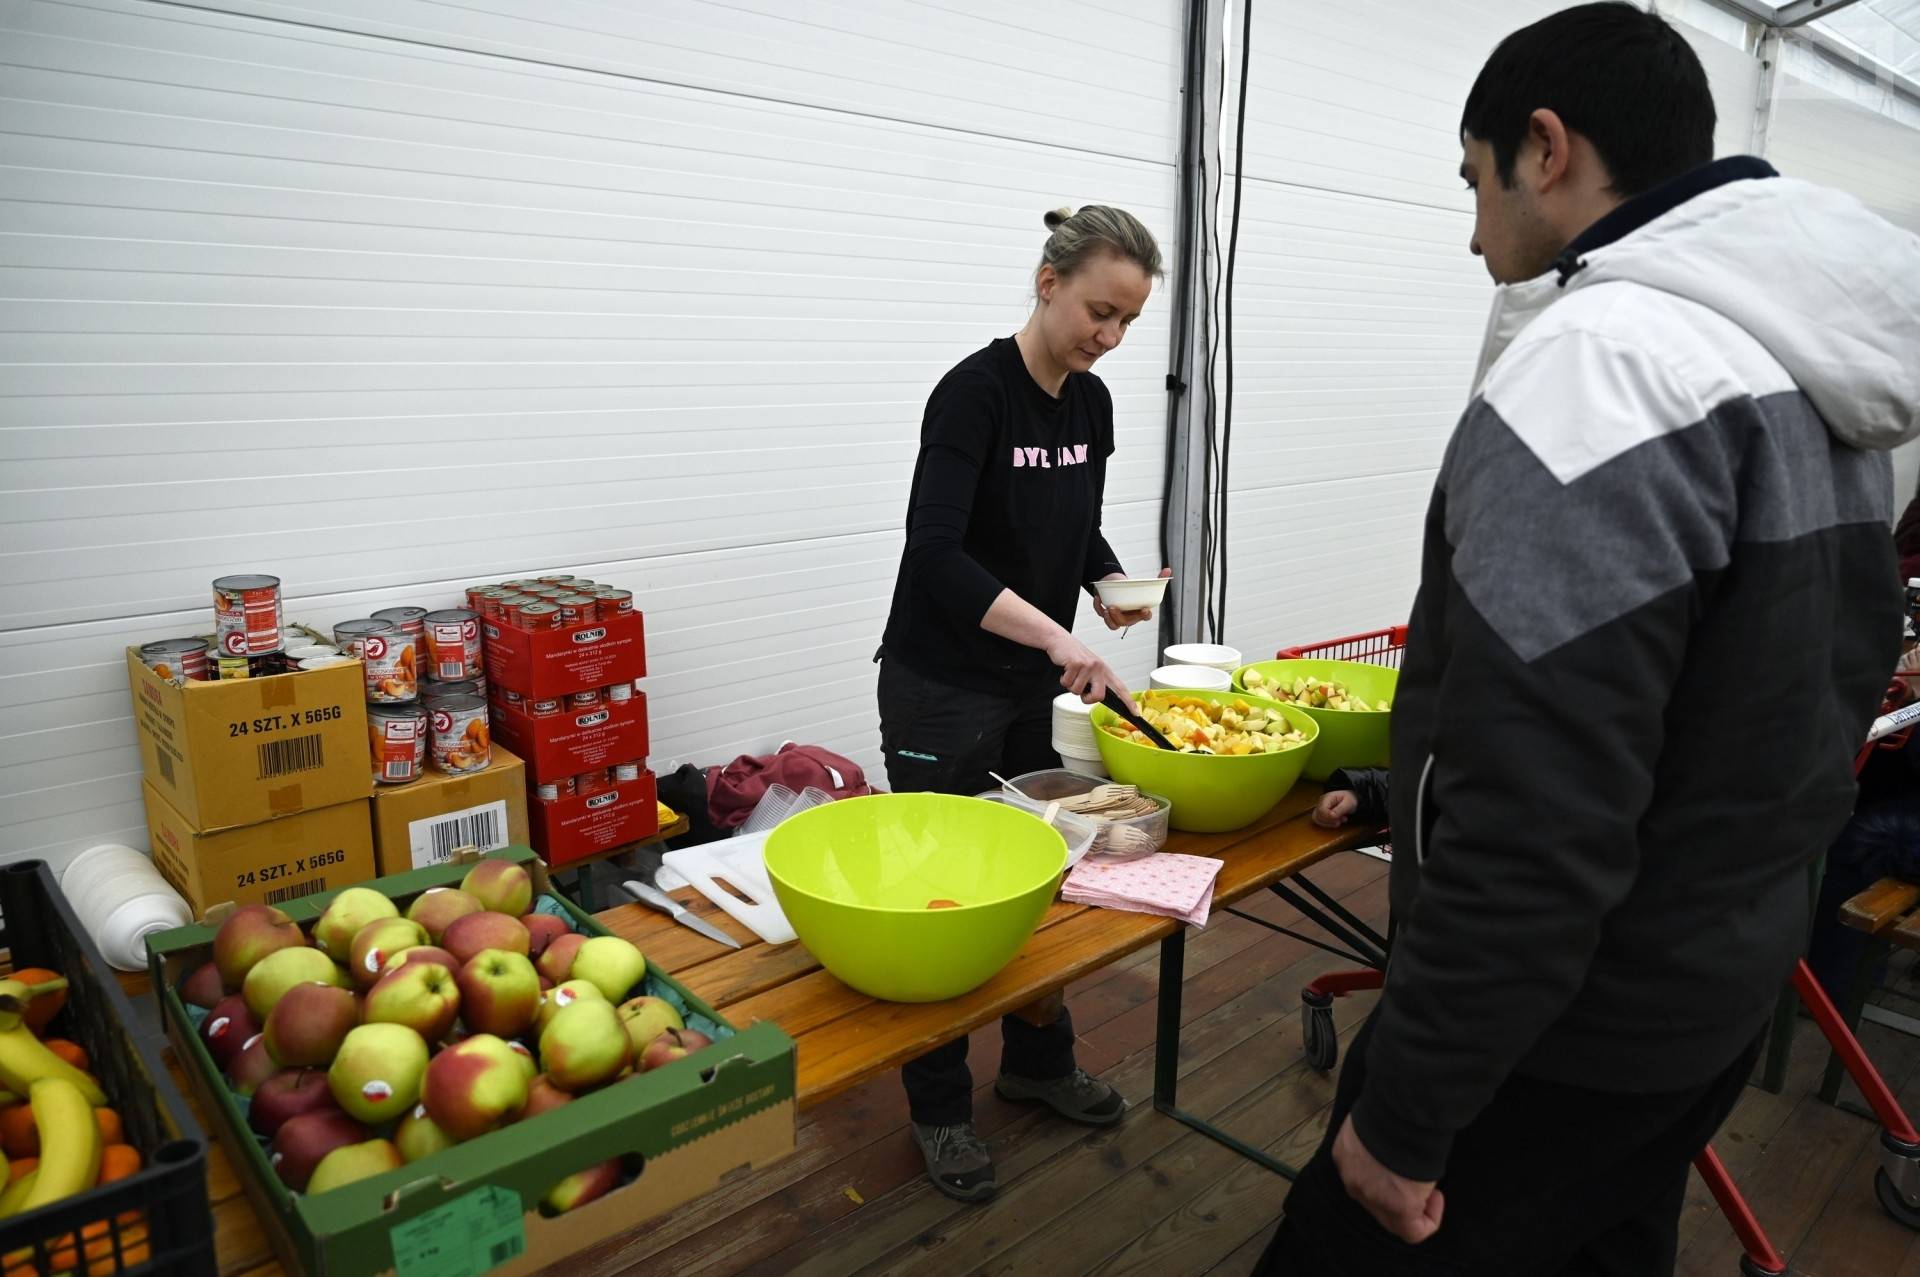 Wielka zbiórka żywności nie tylko dla uchodźców. Skala ubóstwa w Polsce rośnie